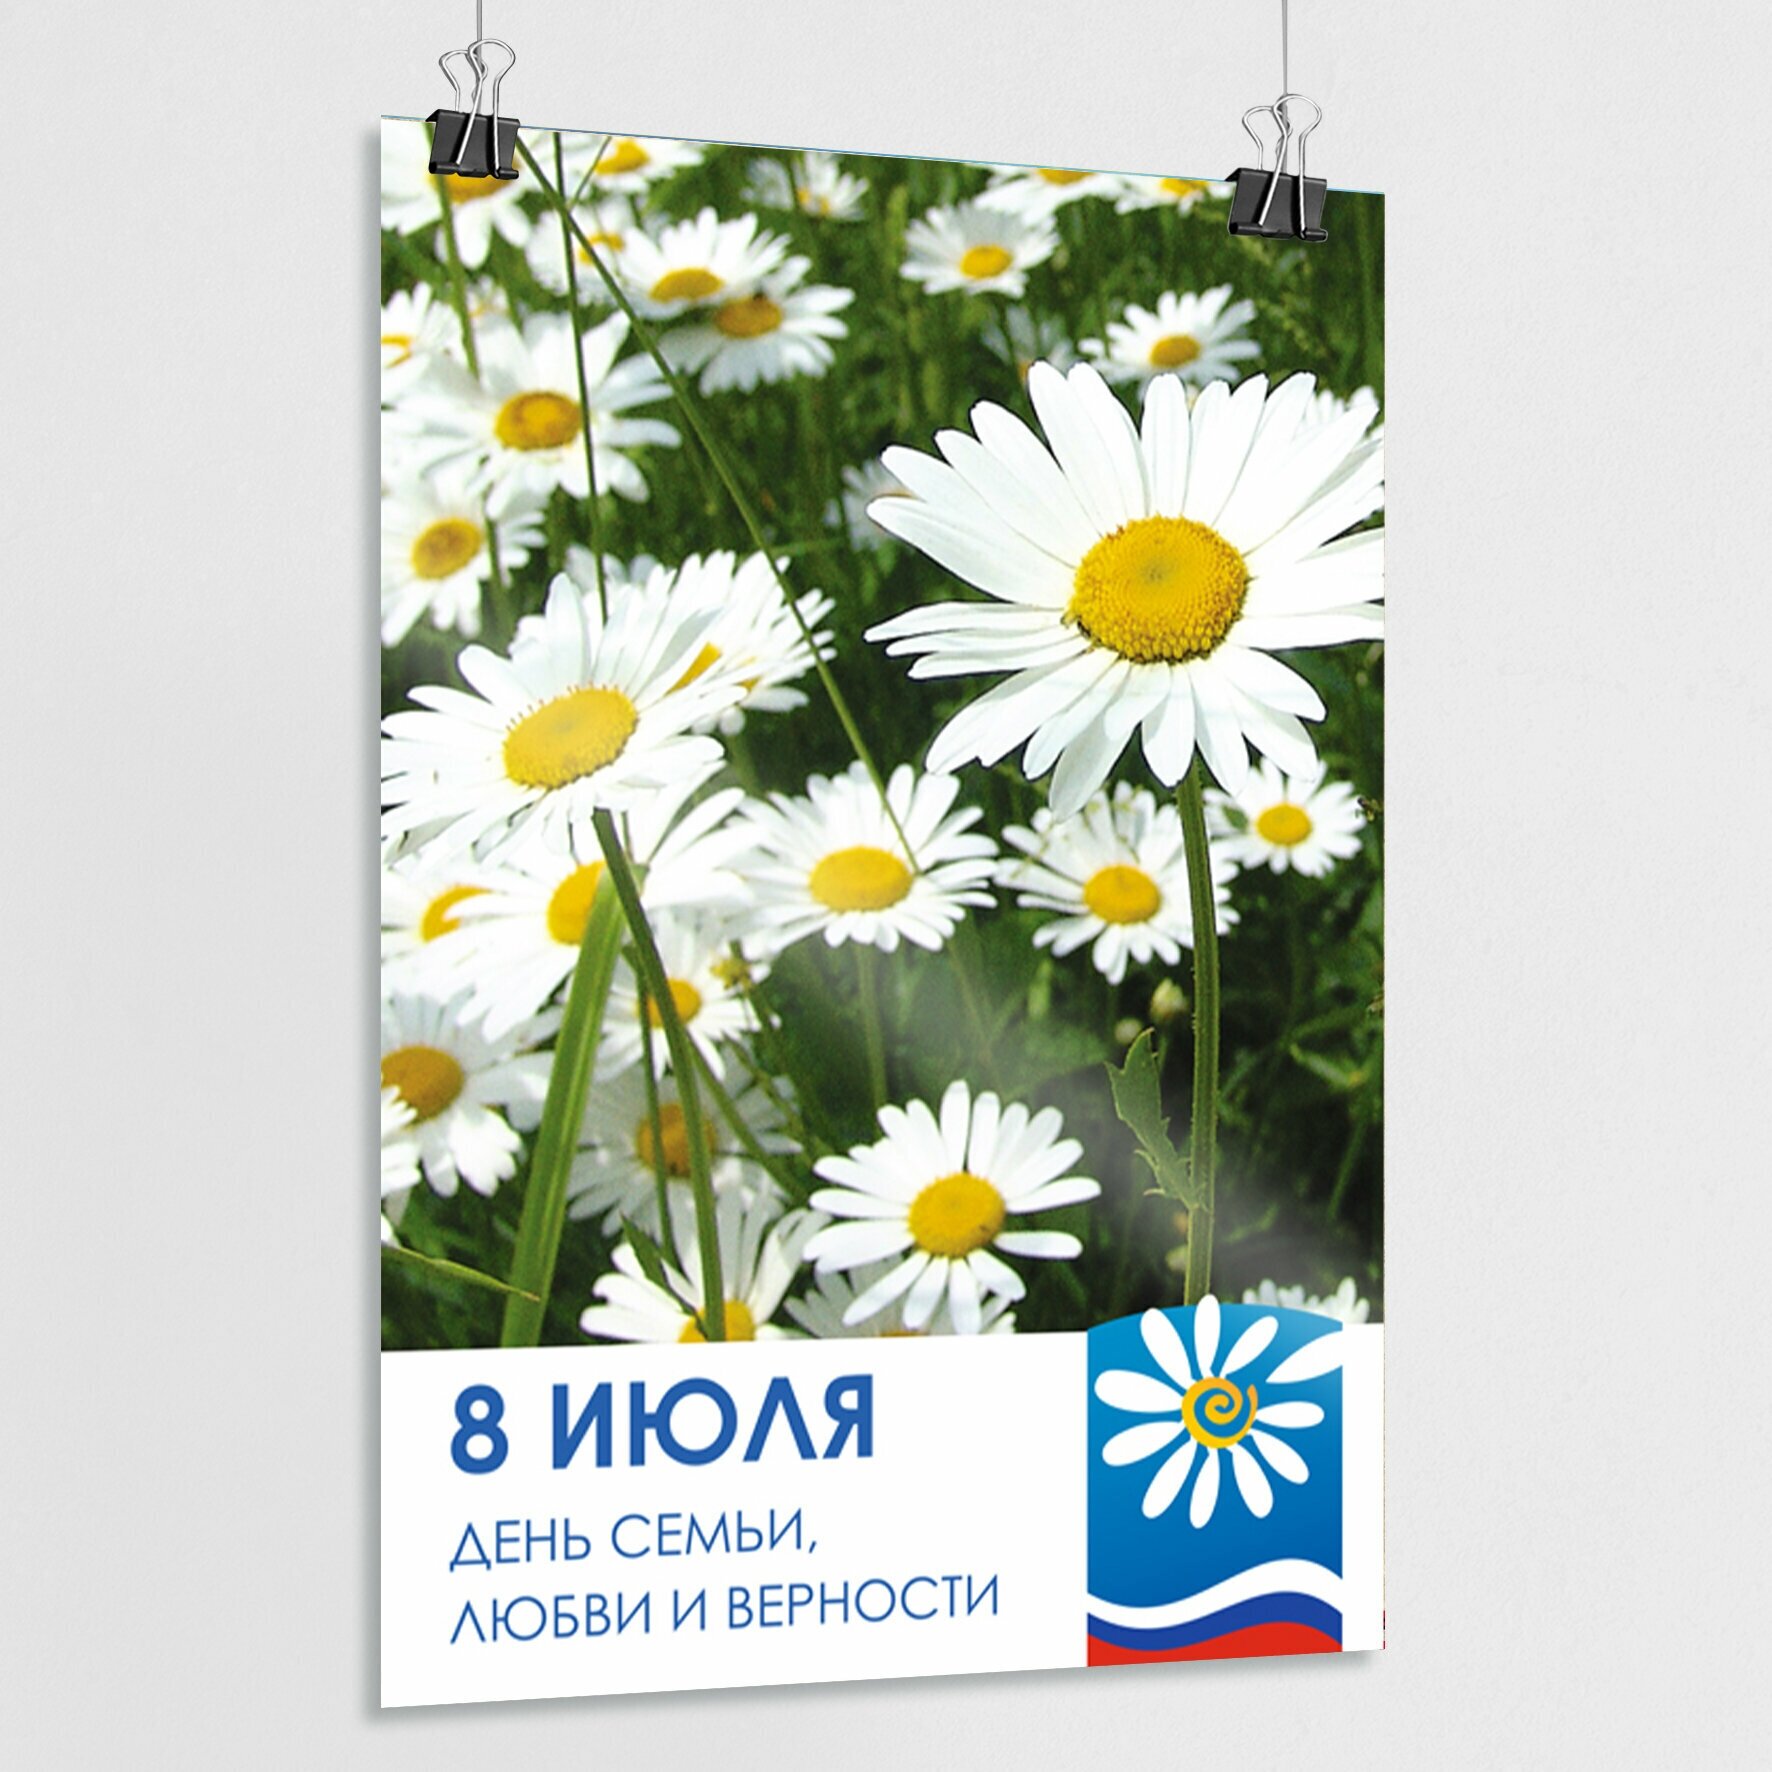 Плакат, постер на День семьи, любви и верности, 8 июля / А-3 (30x42 см.)